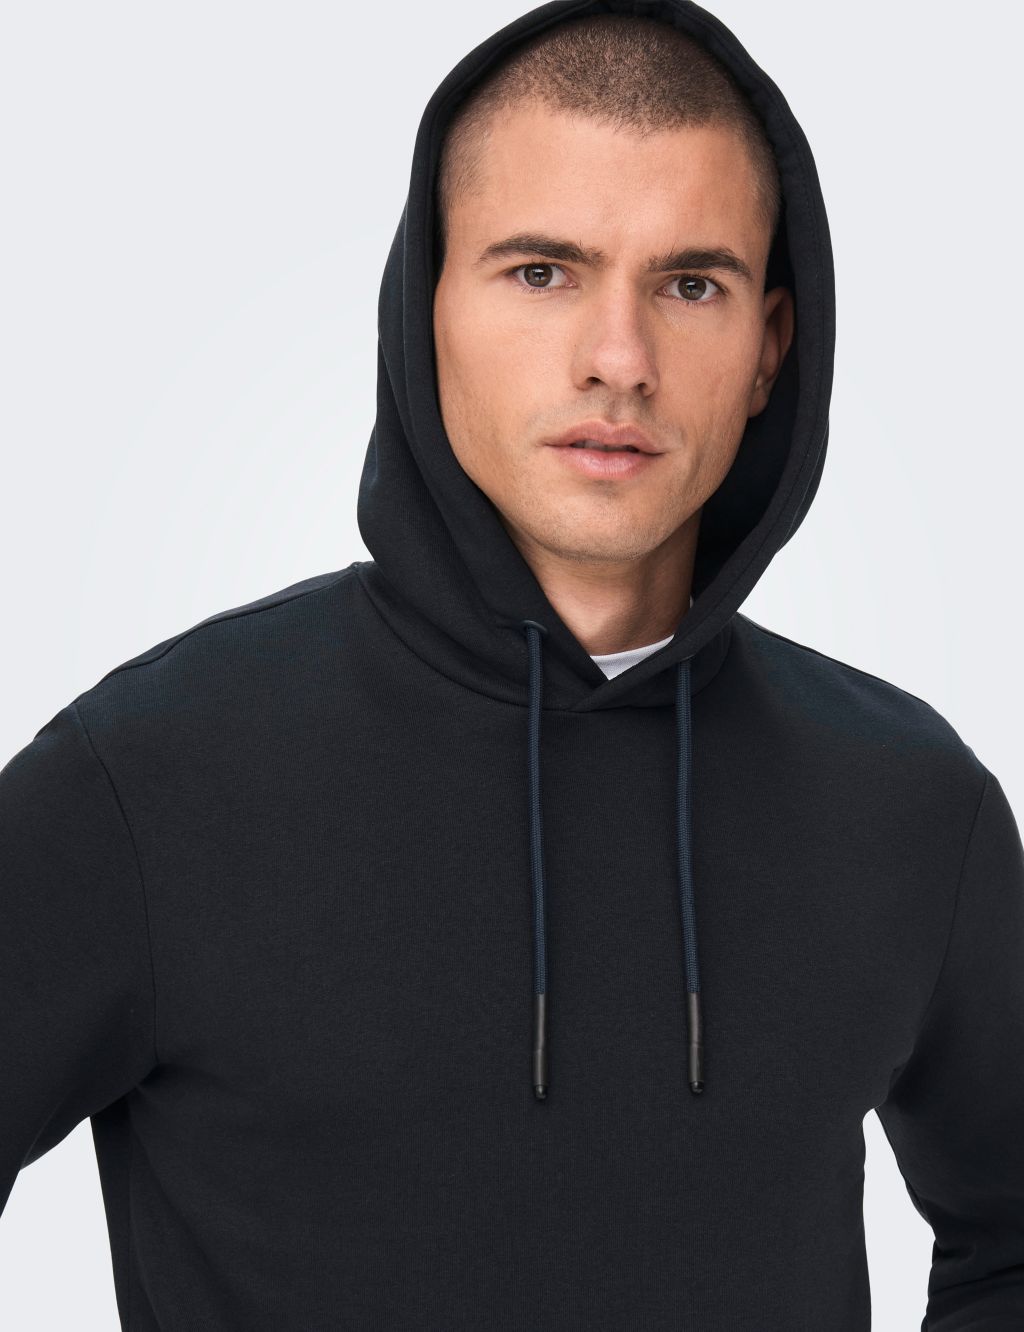 Men's Hoodies & Sweatshirts | M&S